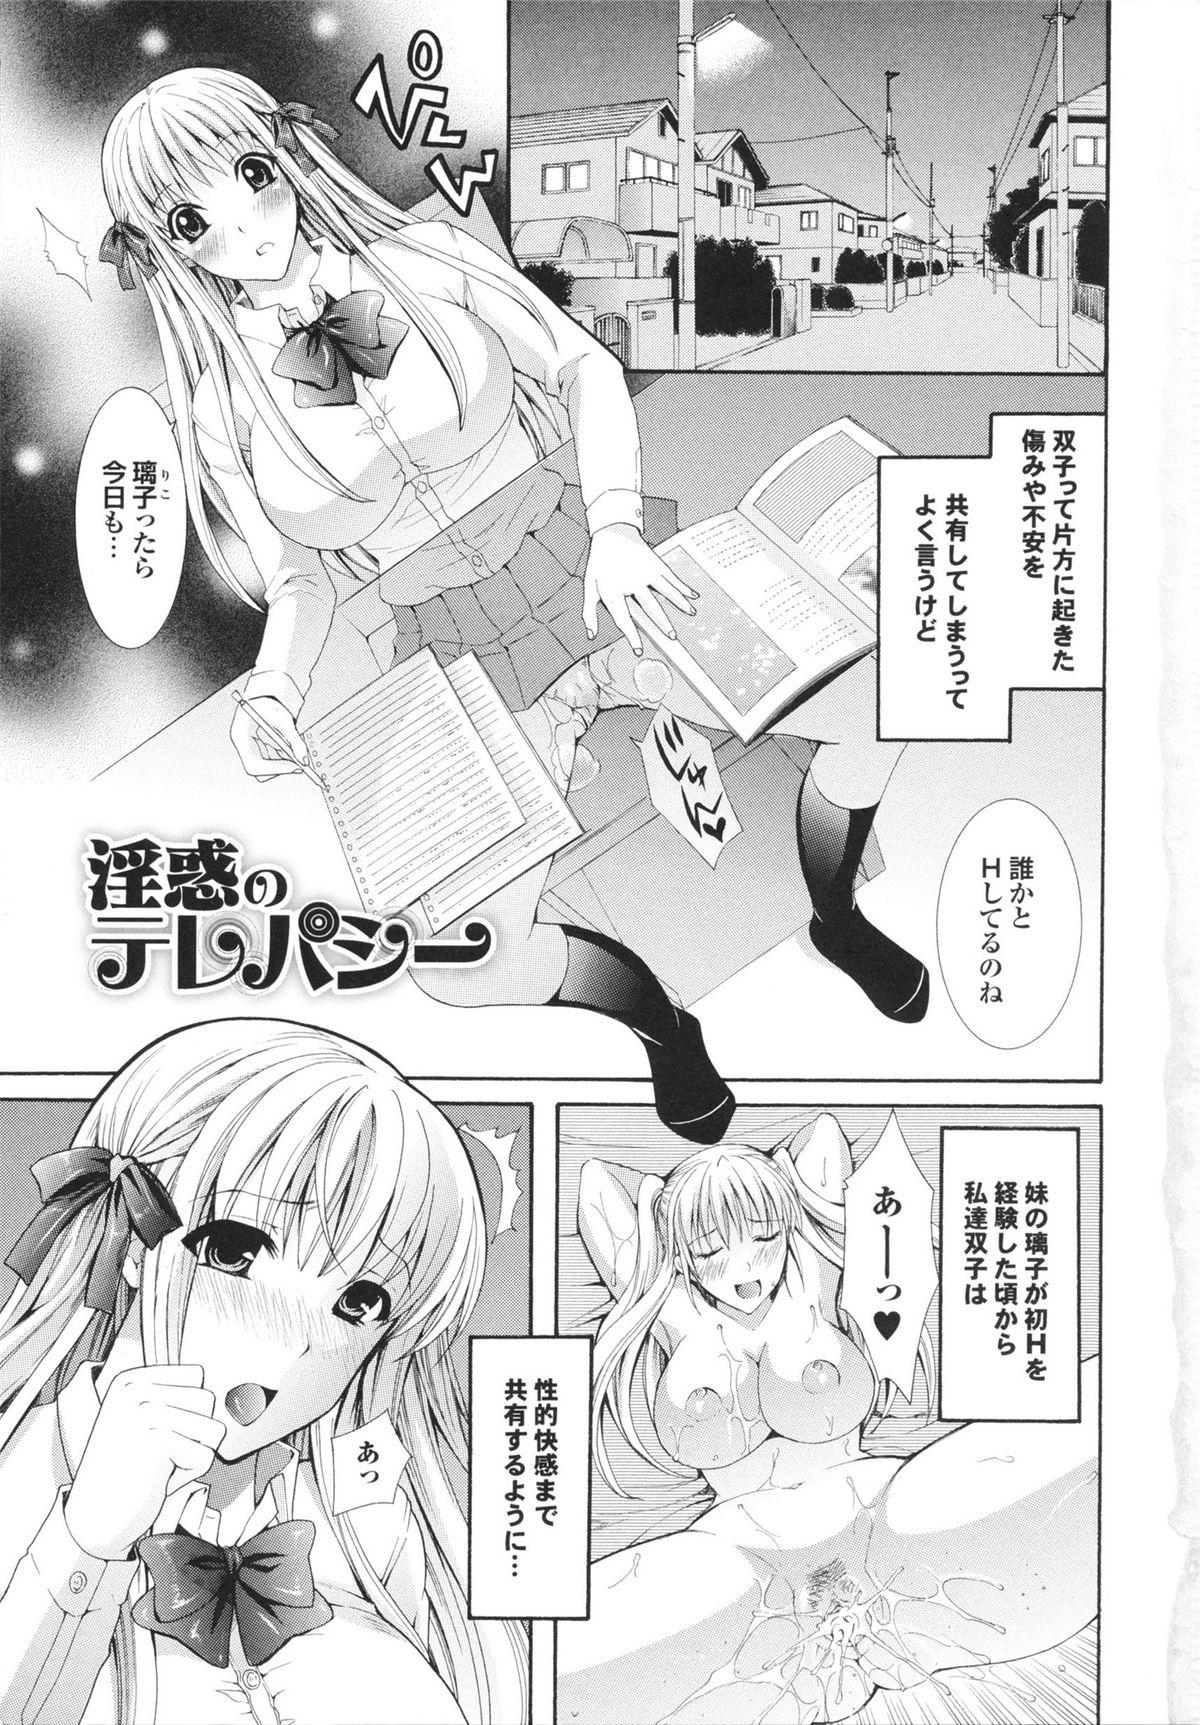 Old Man Kanjuku Bishoujo Milkgake/ Kanjuku Bishoujo Mirukugake Erotic - Page 7